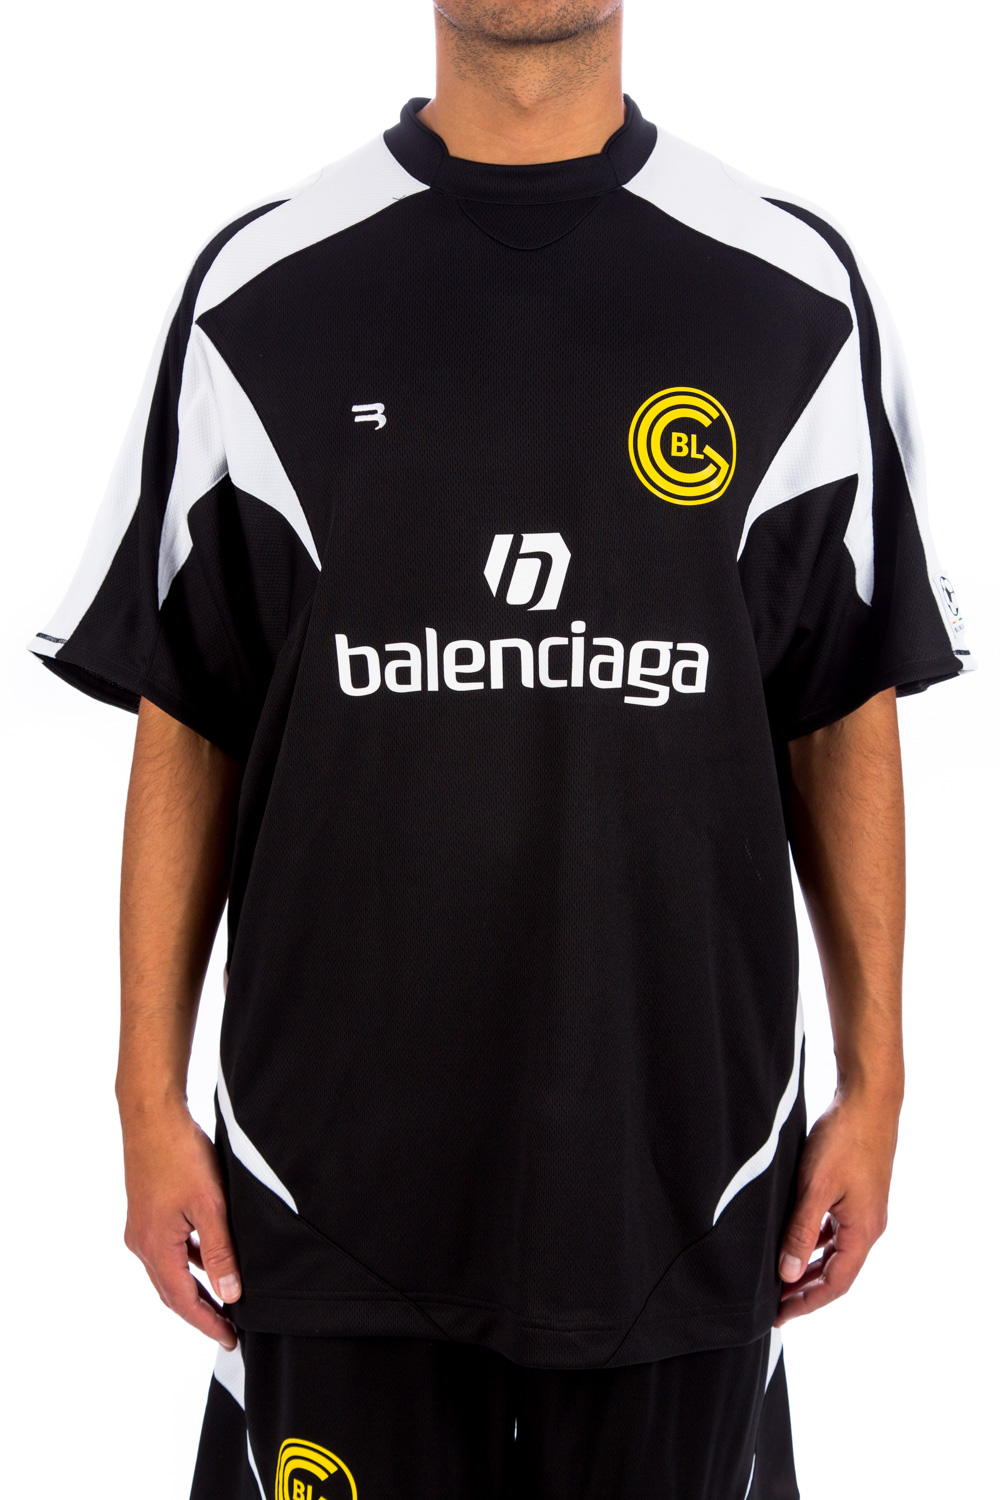 The  780 Balenciaga football shirt